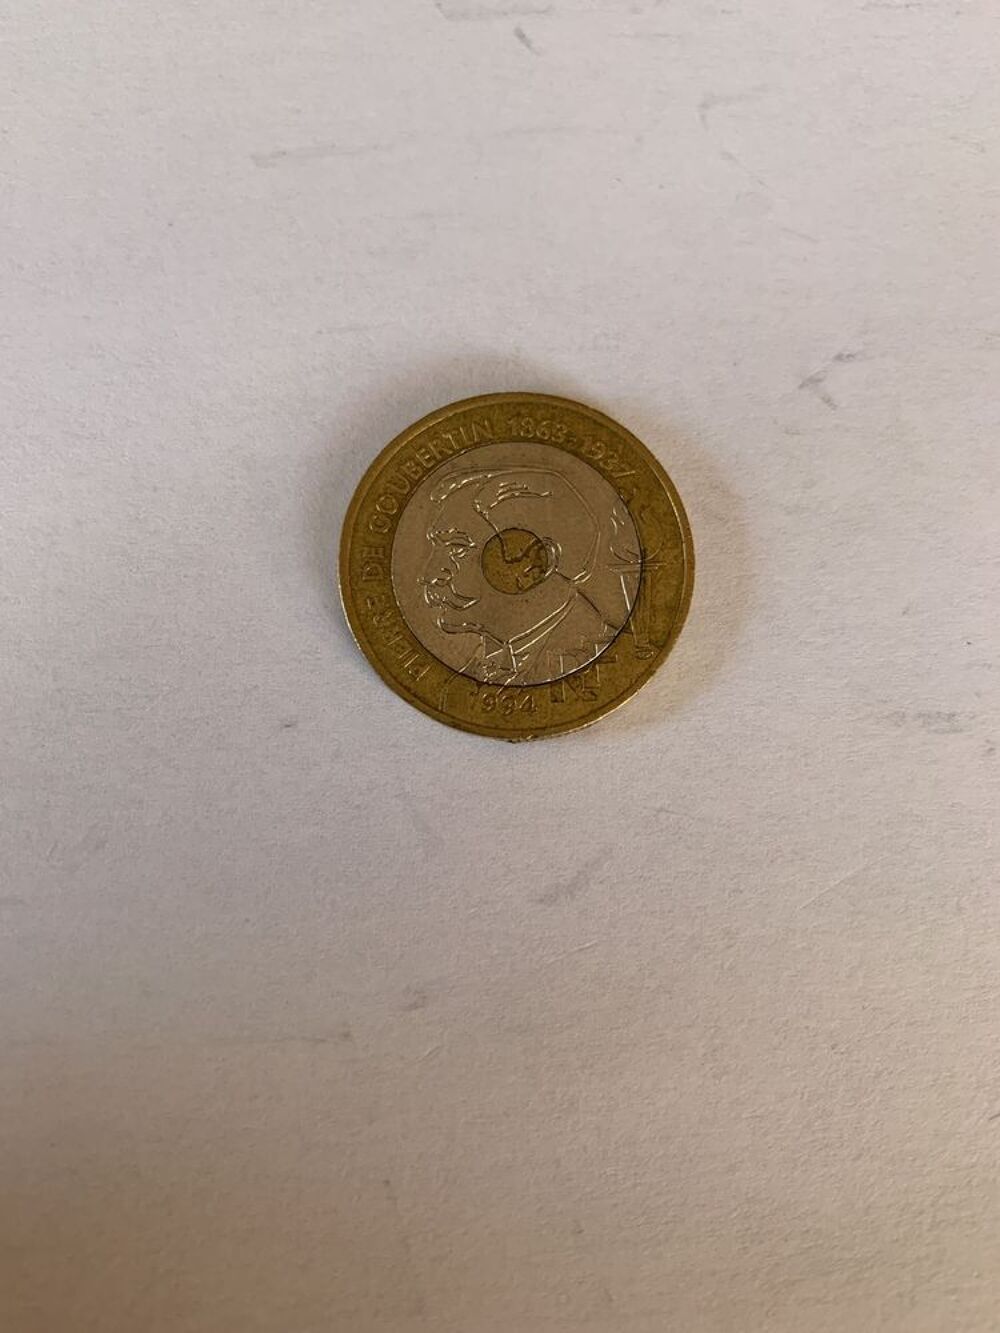 Piece de 20 francs 1994 Pierre De Coubertin 1873-1937 Numismatique Pi&egrave;ce Franc 